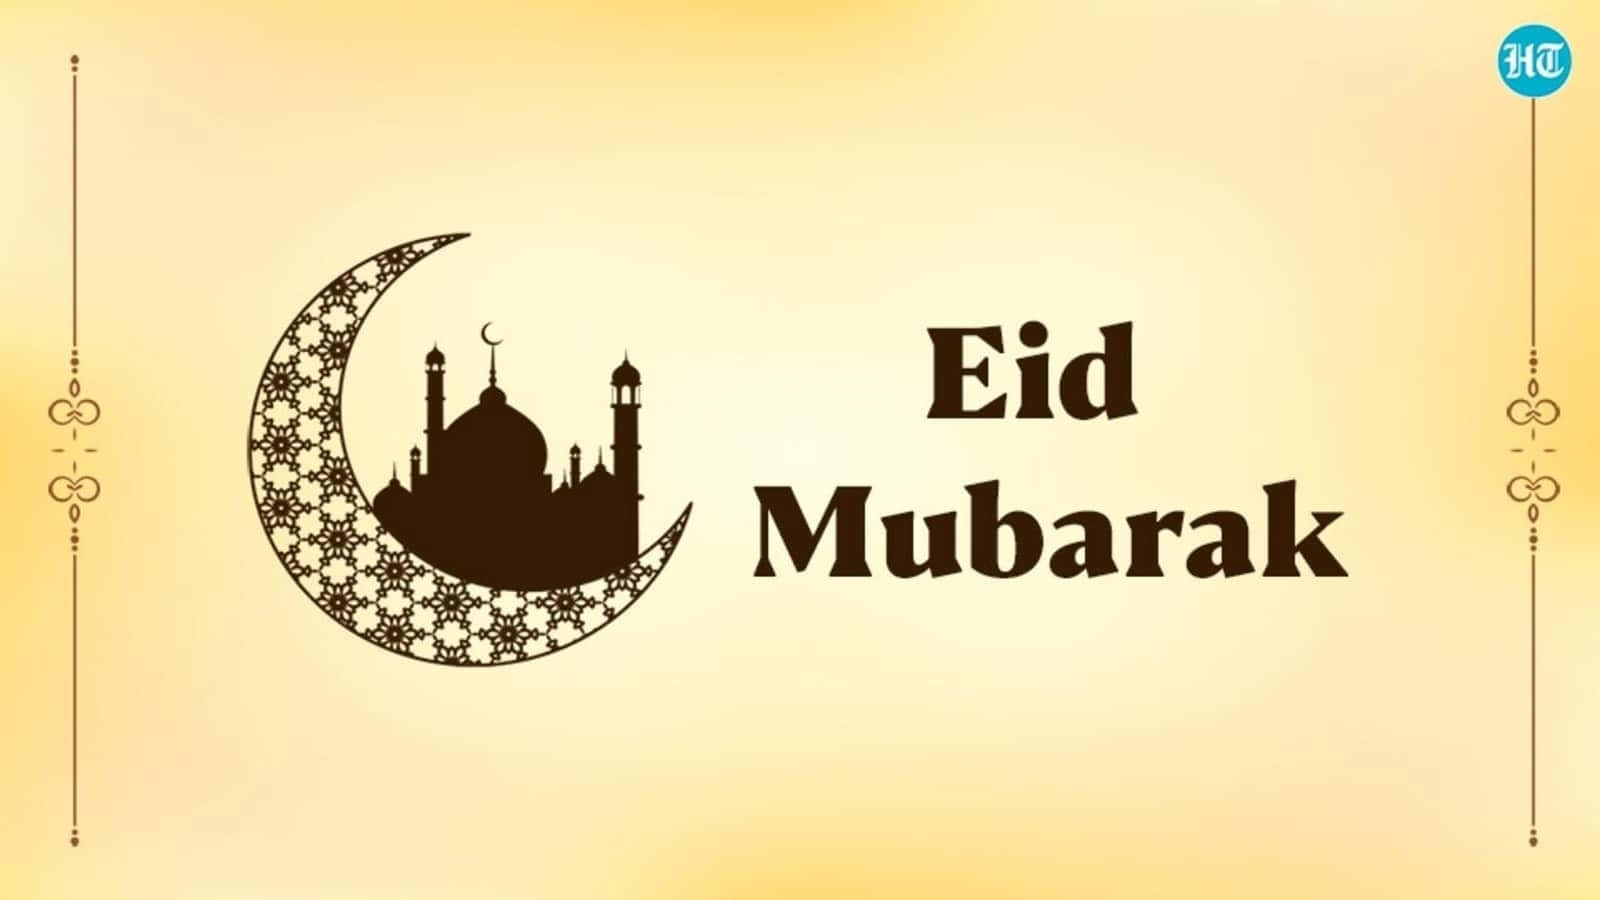 Feiernsie Das Fröhliche Fest Von Eid-al-fitr Mit Ihren Lieben!